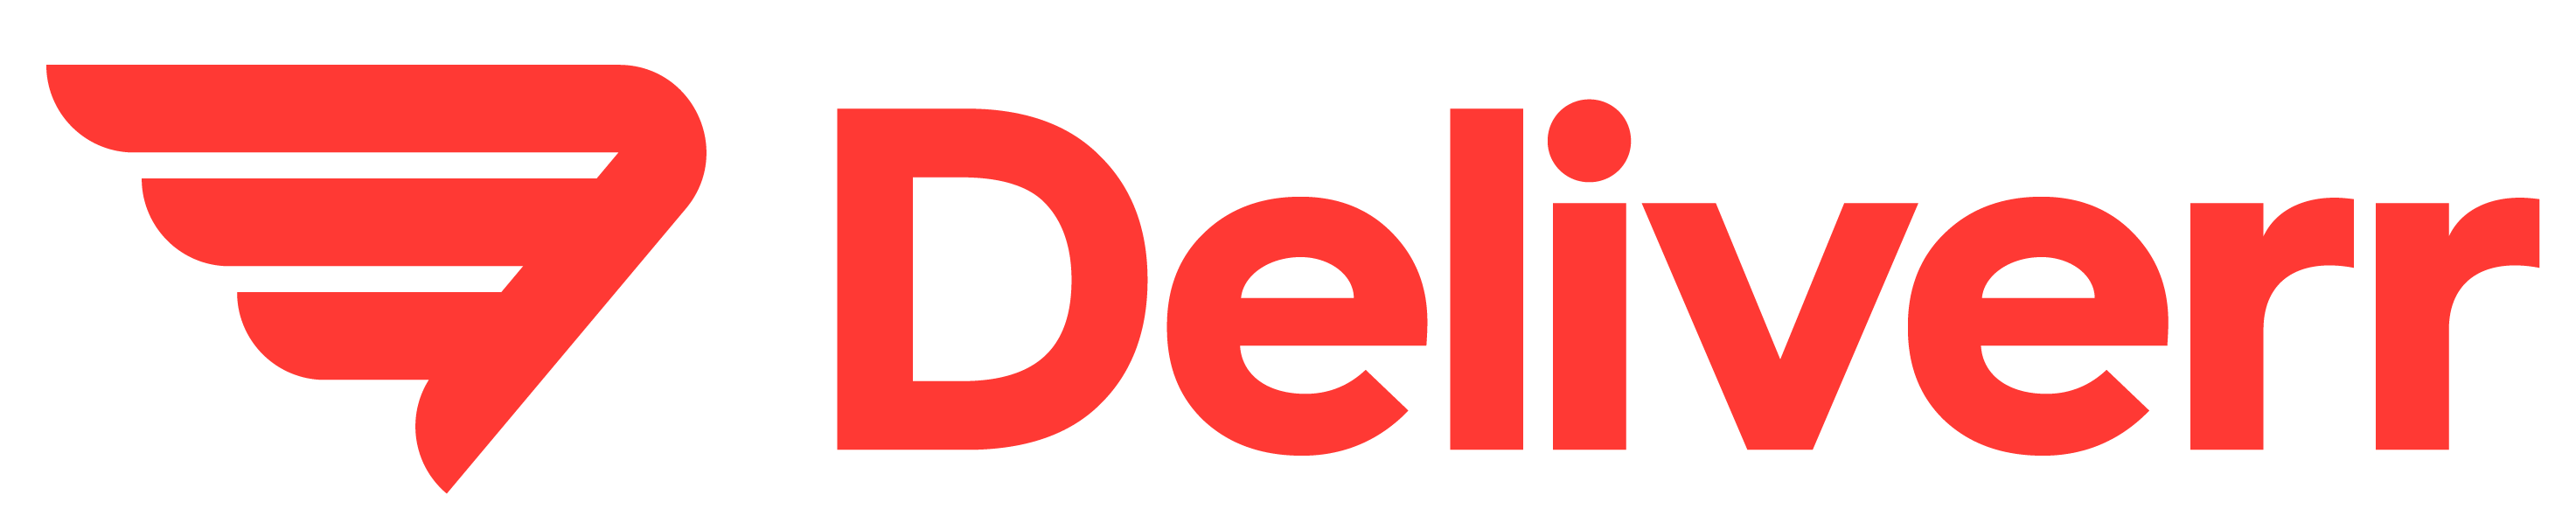 deliverr-logo-red-1